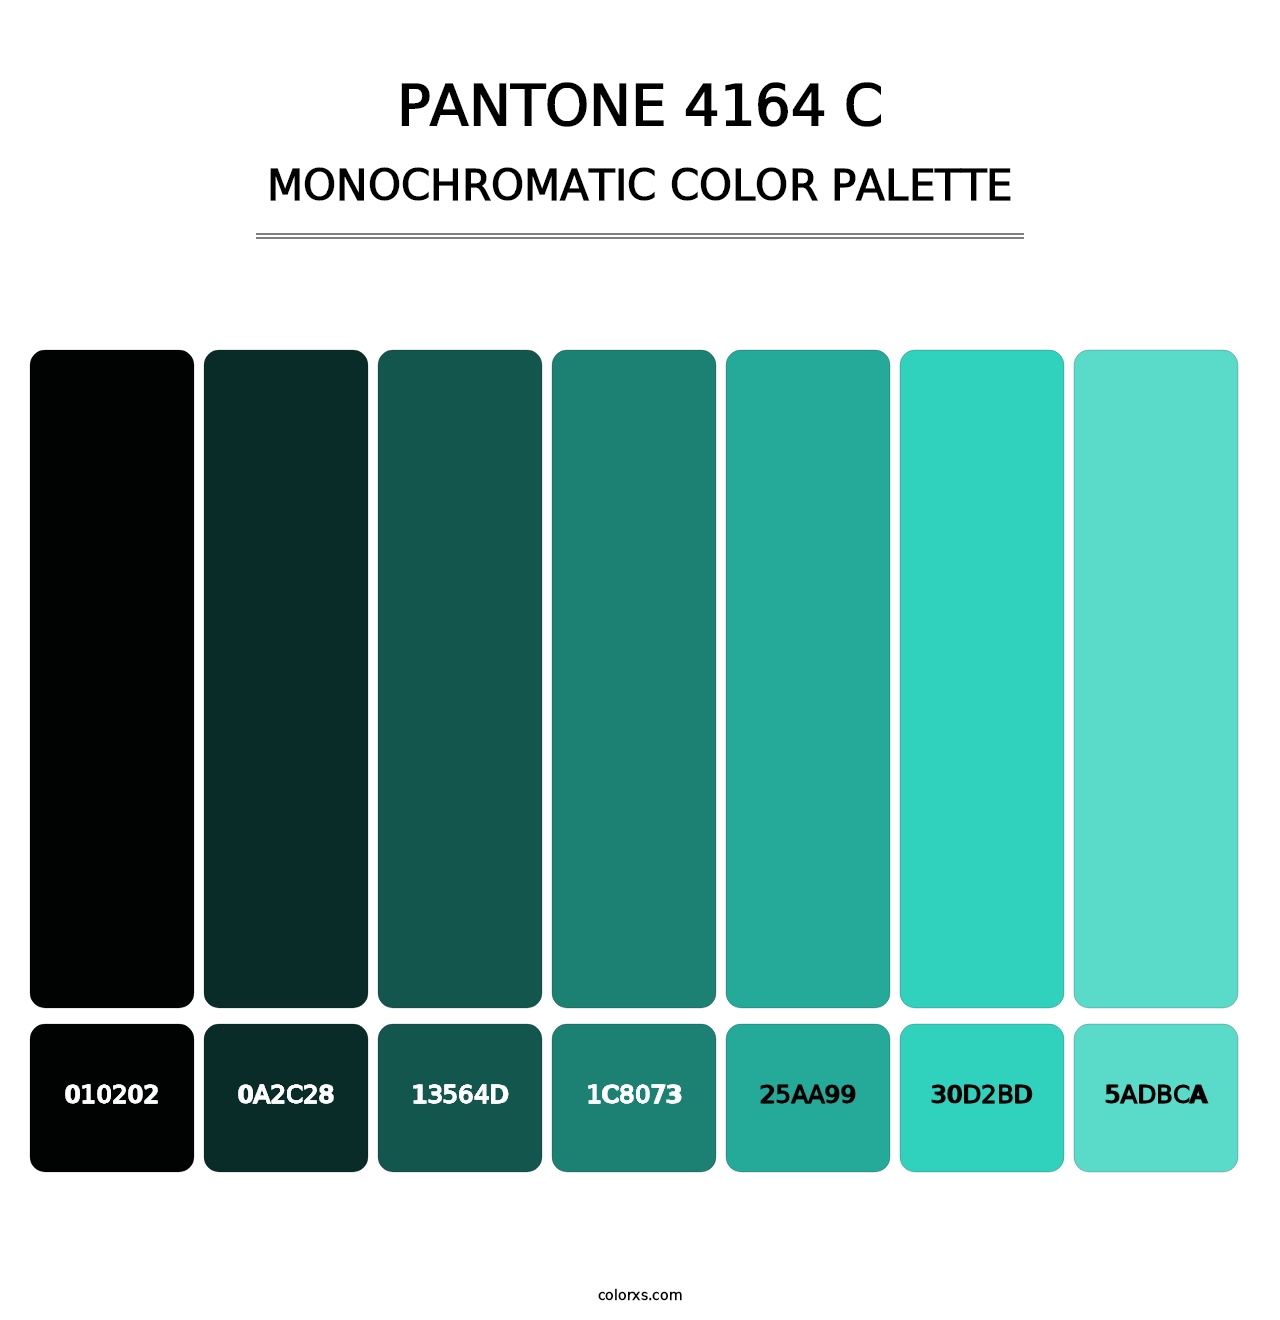 PANTONE 4164 C - Monochromatic Color Palette